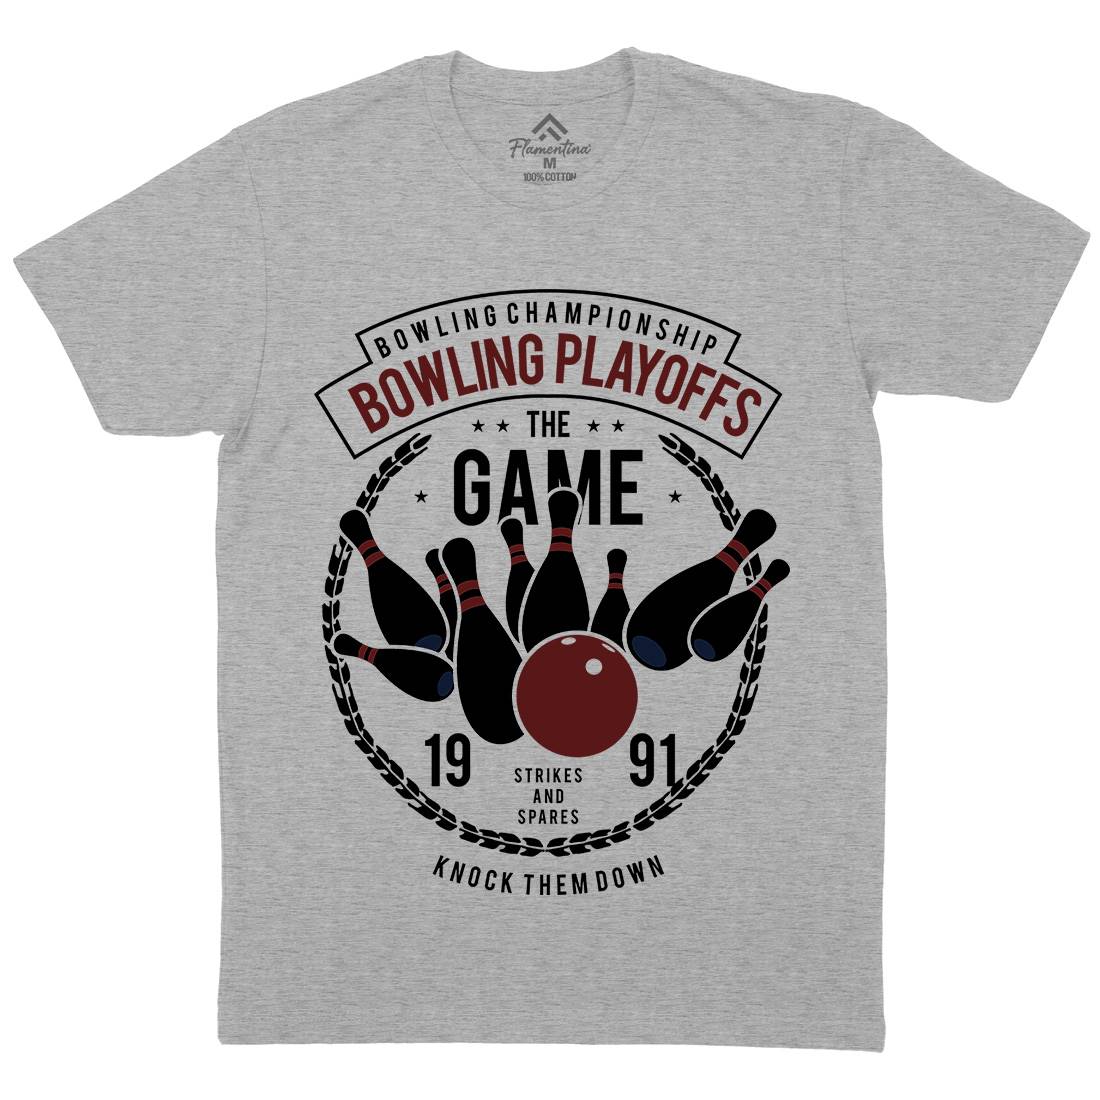 Bowling Playoffs Mens Crew Neck T-Shirt Sport B384